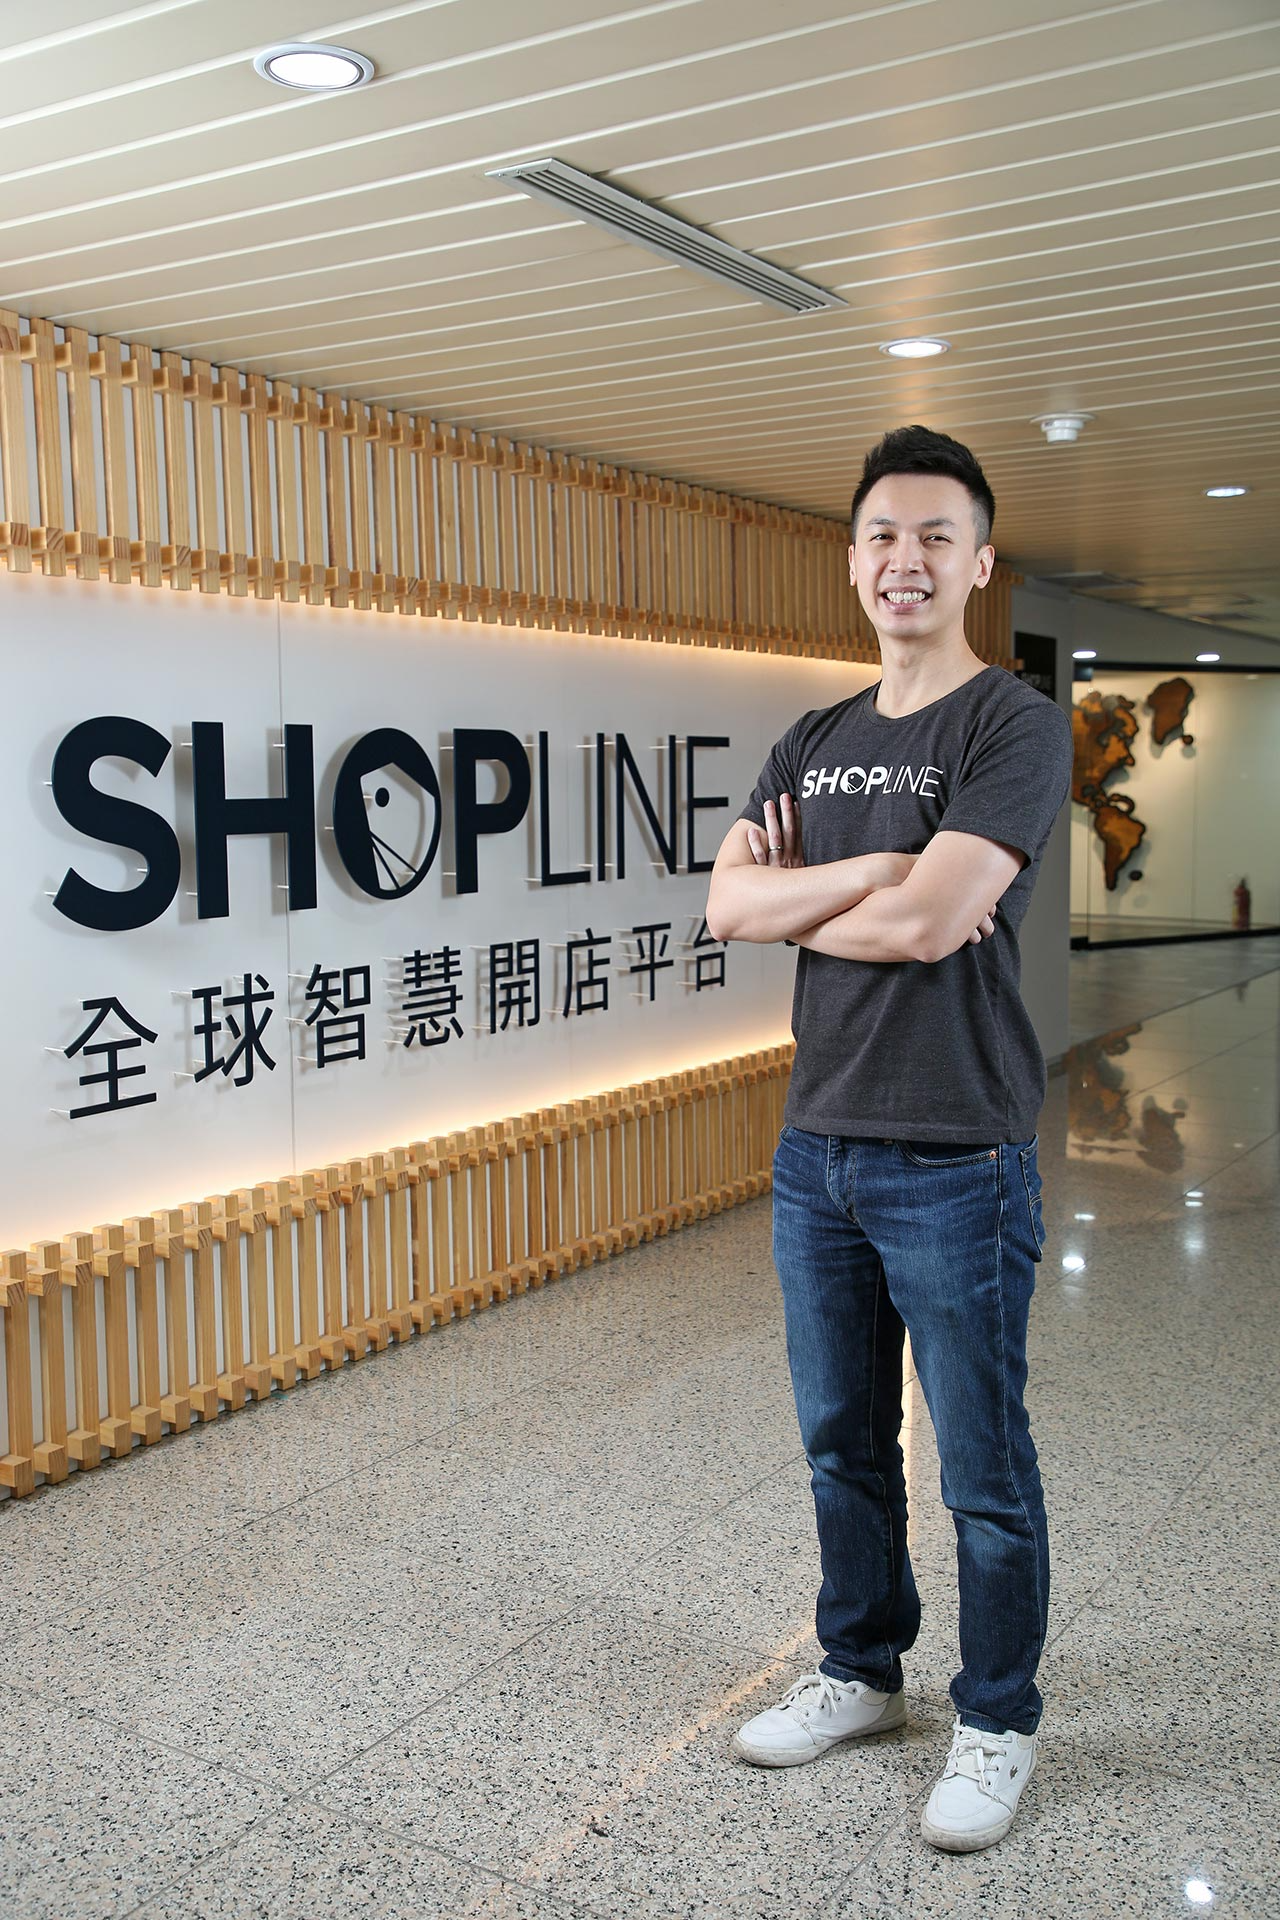 迎合跨境電商浪潮的全面湧現，SHOPLINE 以功能強大的開店系統作為核心基礎，向外發展出揭露海外市場資訊、專業顧問服務、智慧廣告系統、社群電商導購，再到 O2O 整合拓銷全方位服務，成功協助眾多台灣企業拓銷香港與東南亞市場。